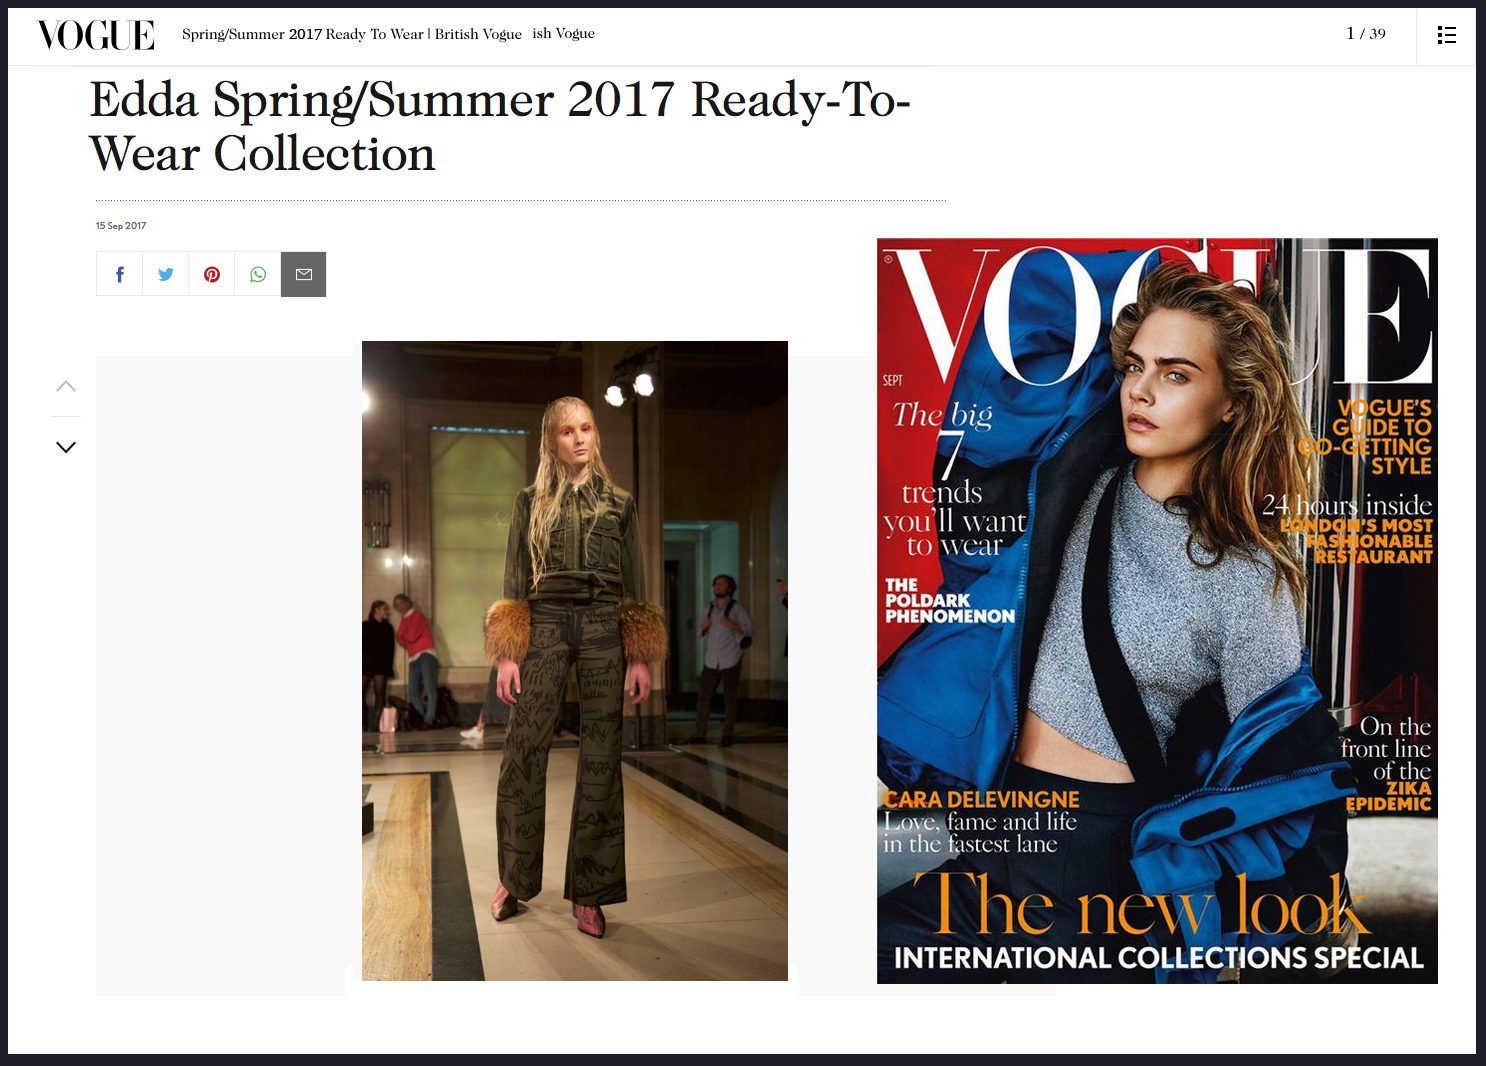 EDDA Spring Summer 2017 Vogue